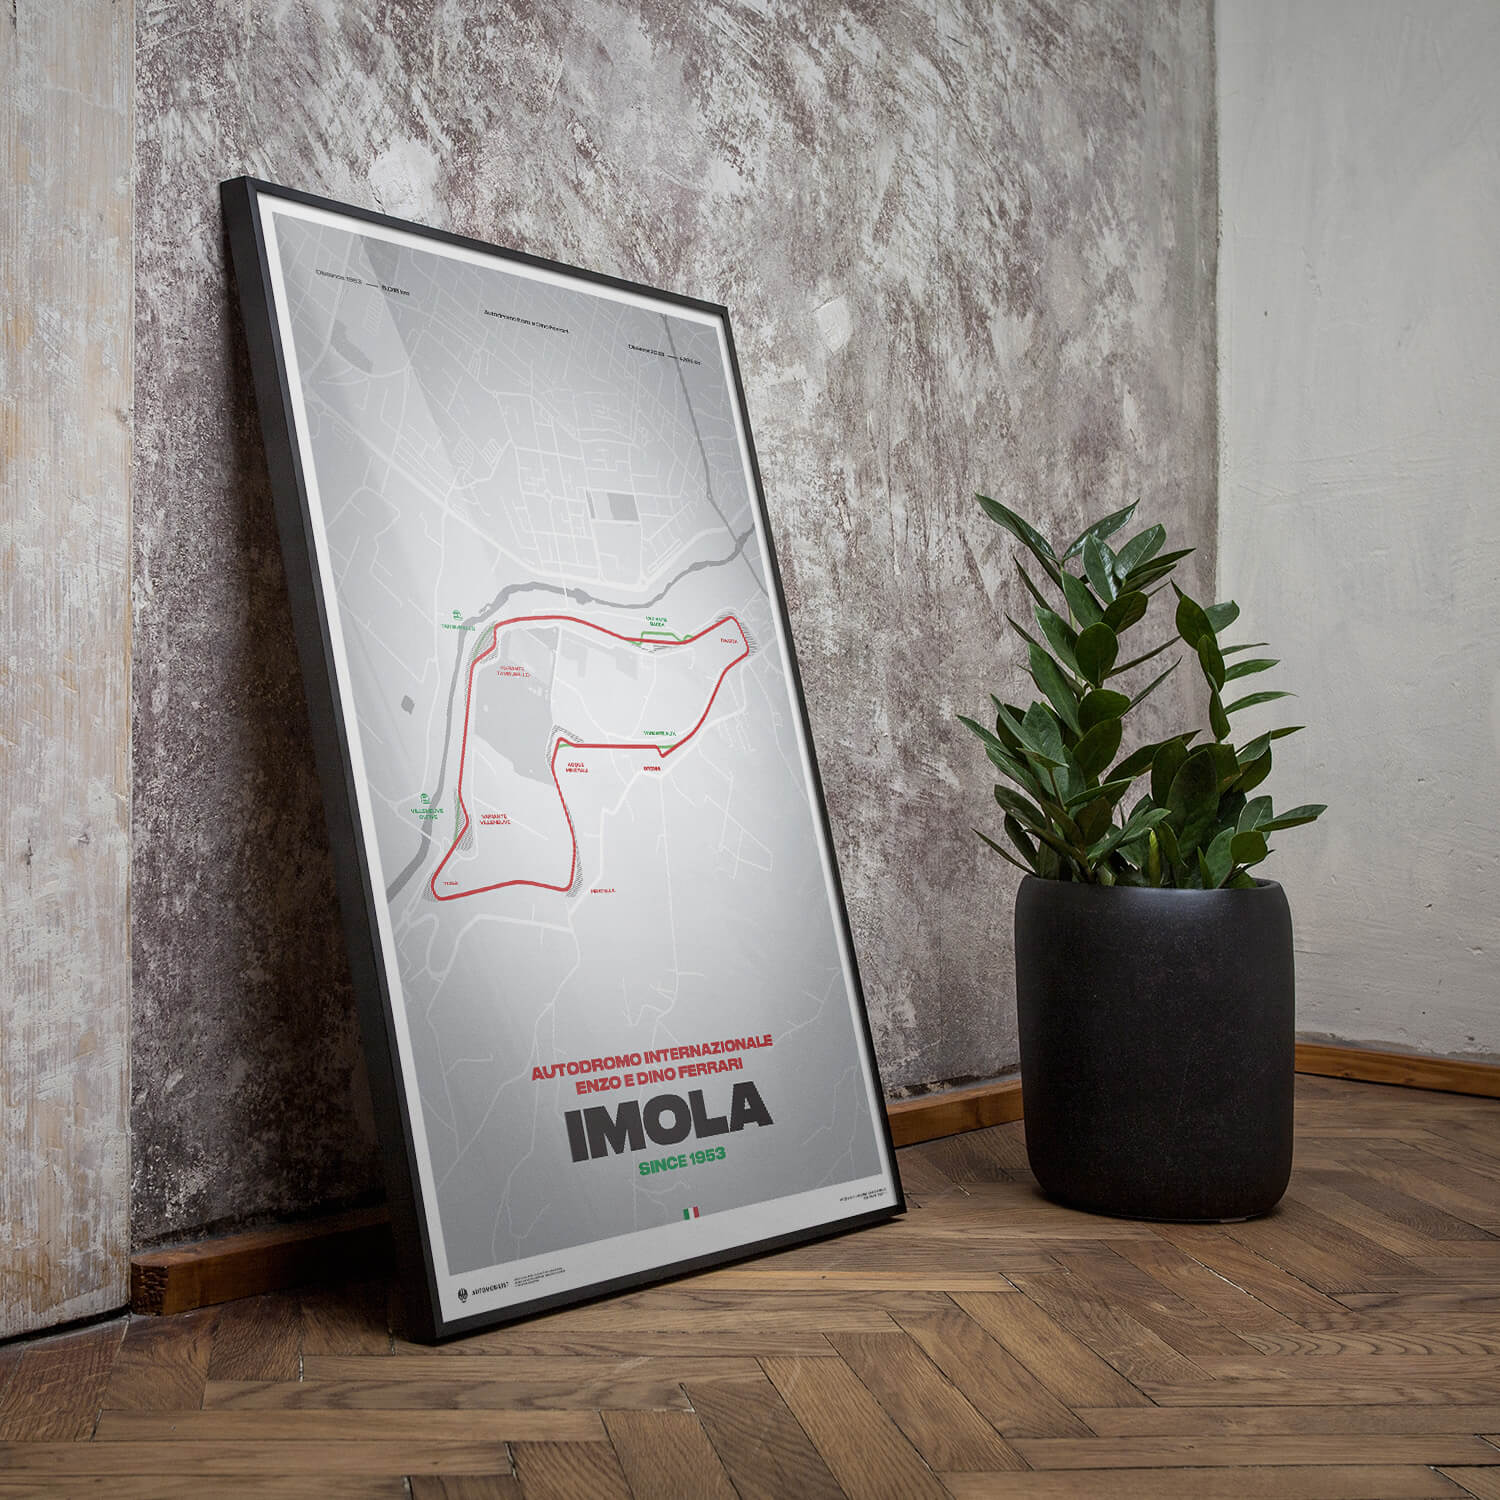 Imola Circuit – Track Evolution – Autodromo Internazionale Enzo e Dino Ferrari